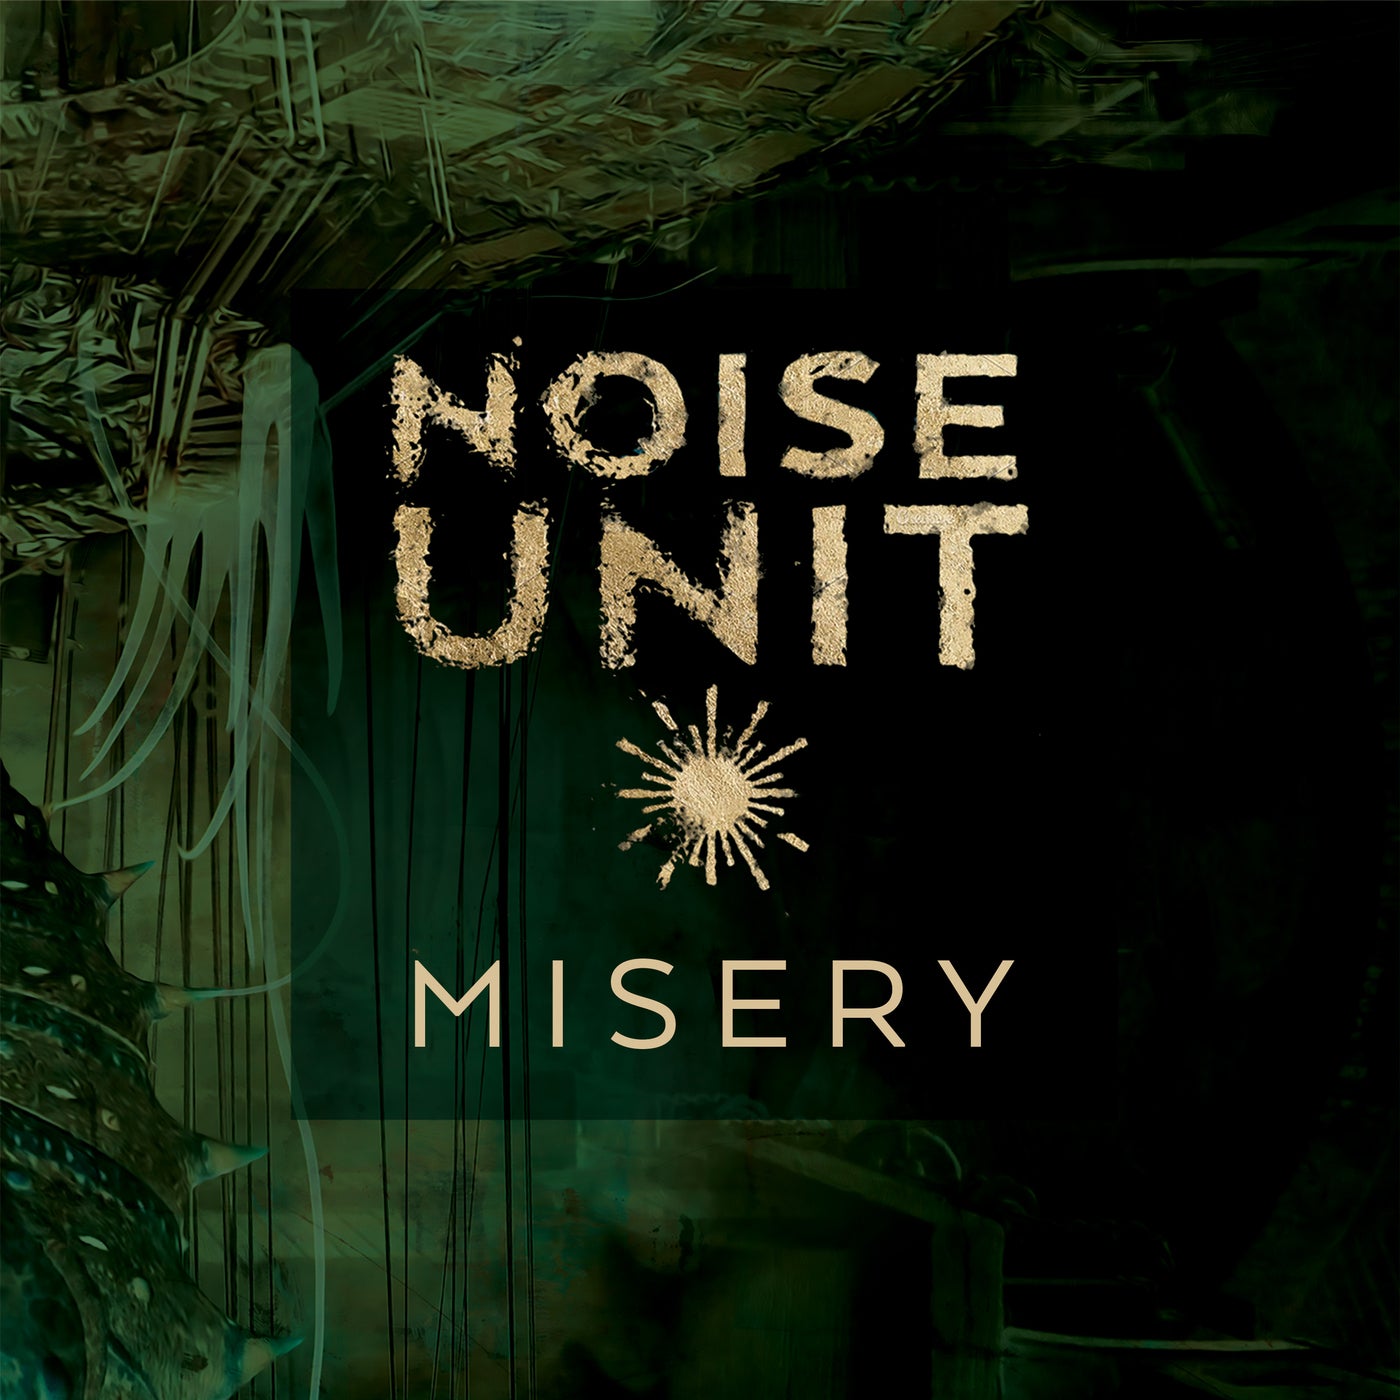 Noise Unit music download - Beatport